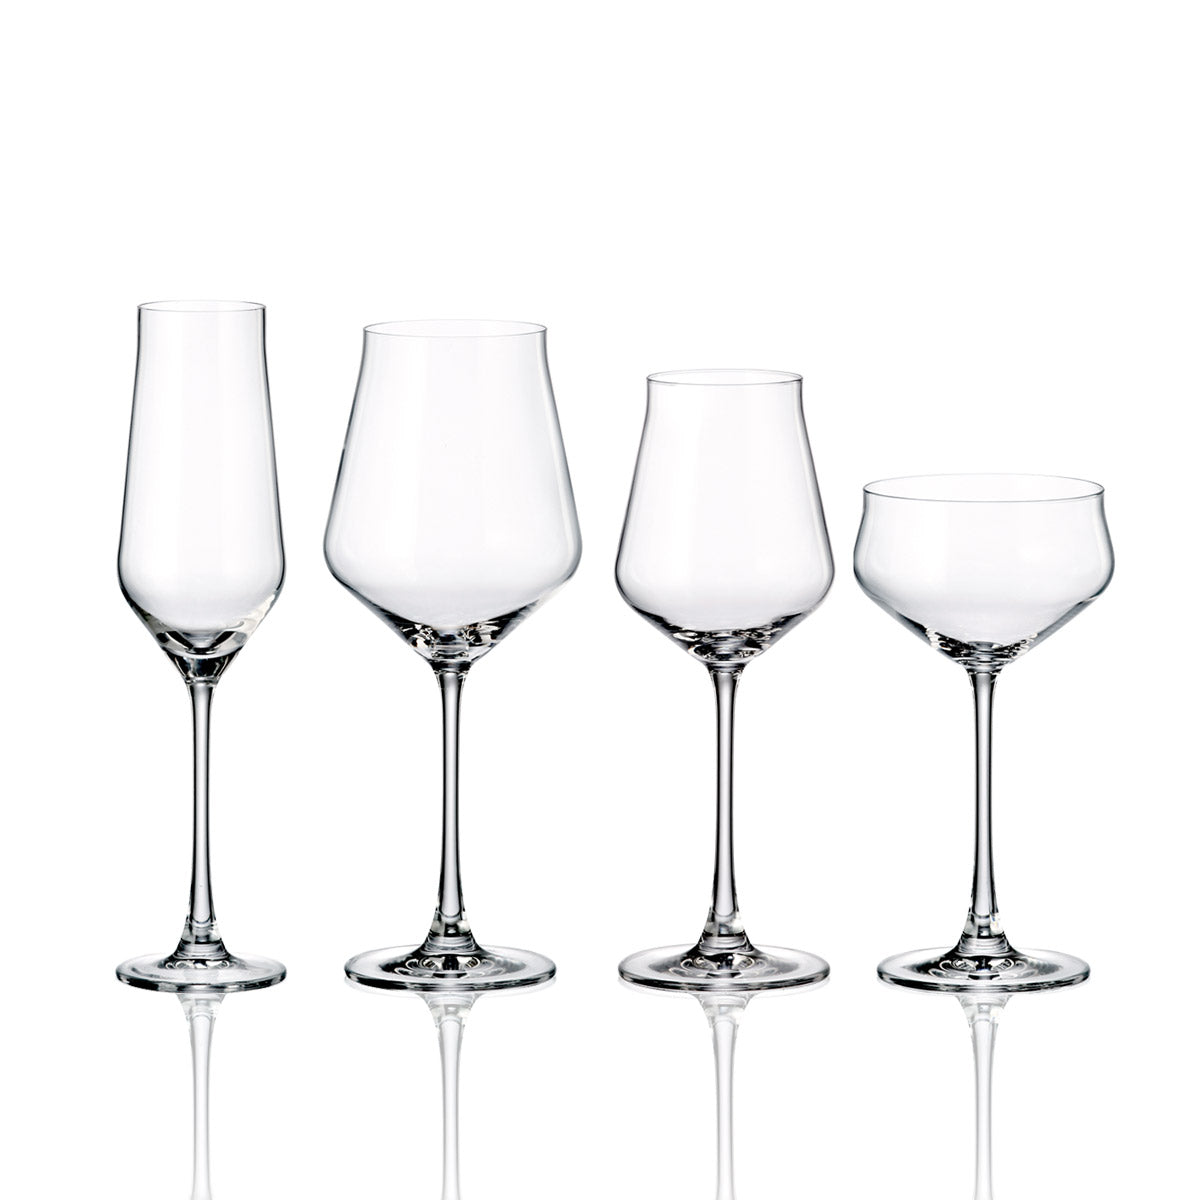 Servizio di bicchieri a calice 50 pezzi dal design moderno e lineare - Sabrina